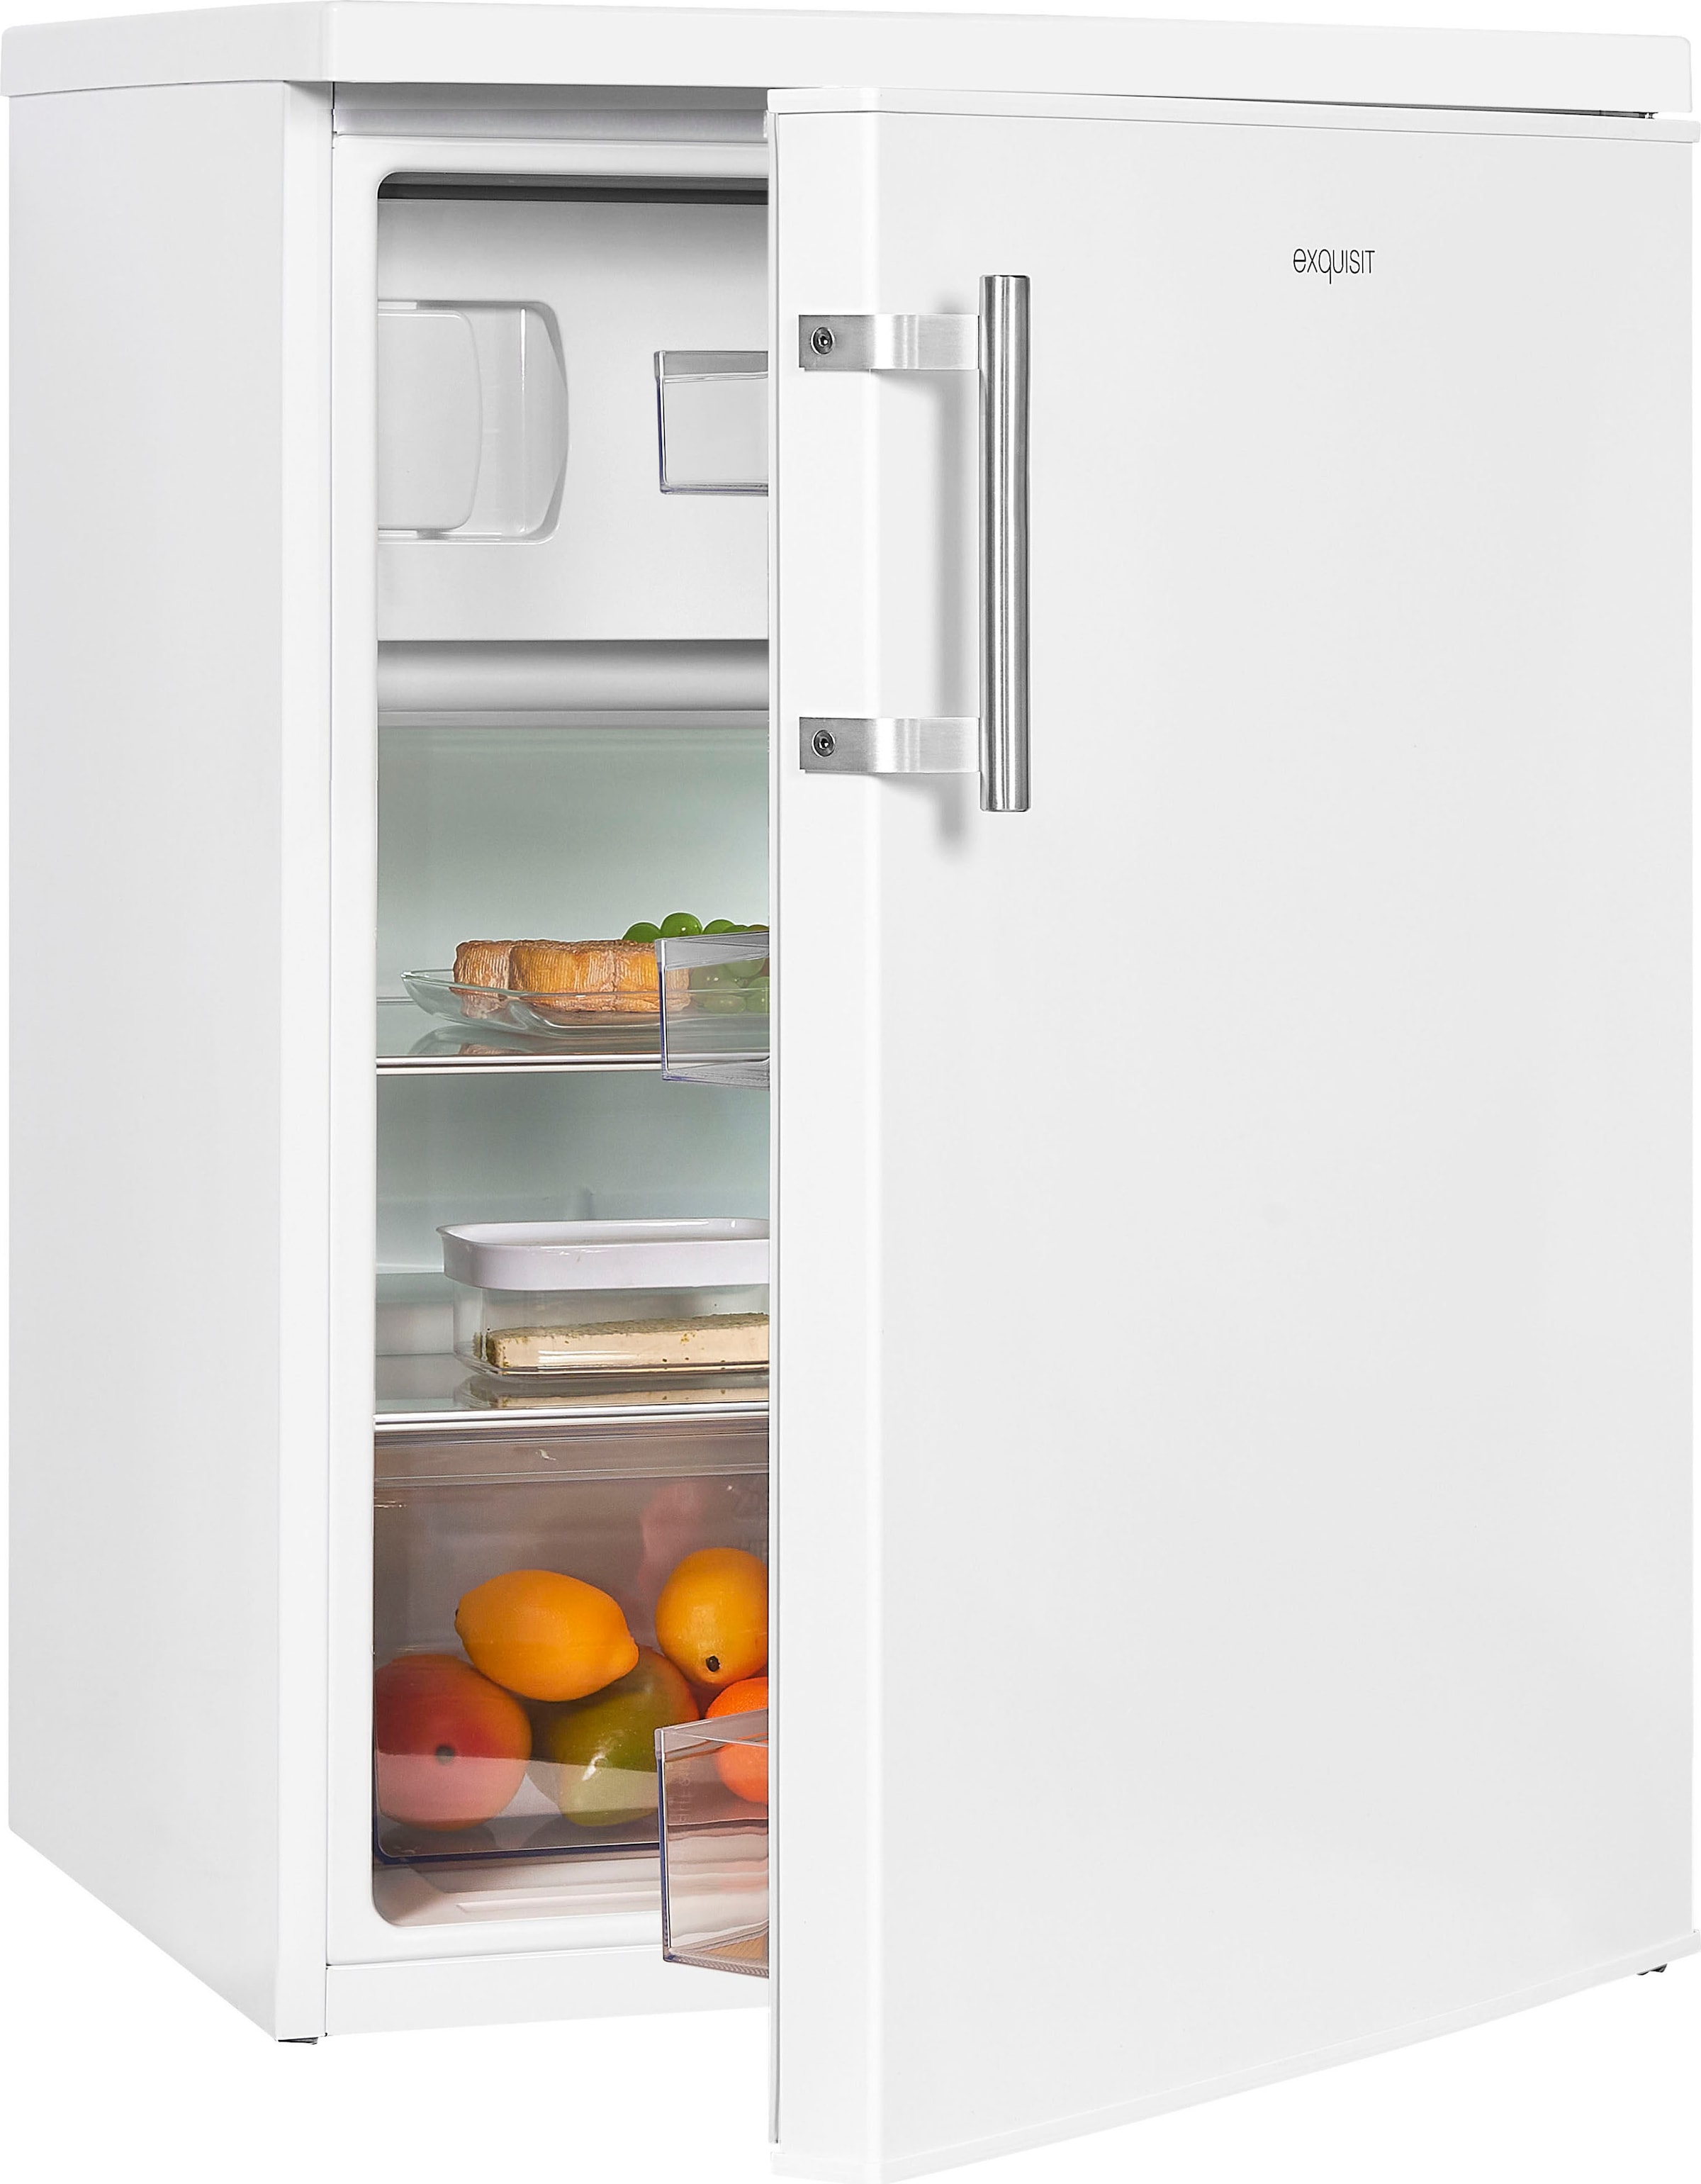 exquisit Kühlschrank, KS18-4-H-170D weiss, 85,0 cm hoch, 60,0 cm breit, Energieeffizienzklasse D, 136 Liter Nutzinhalt, 4 Sterne Gefrieren